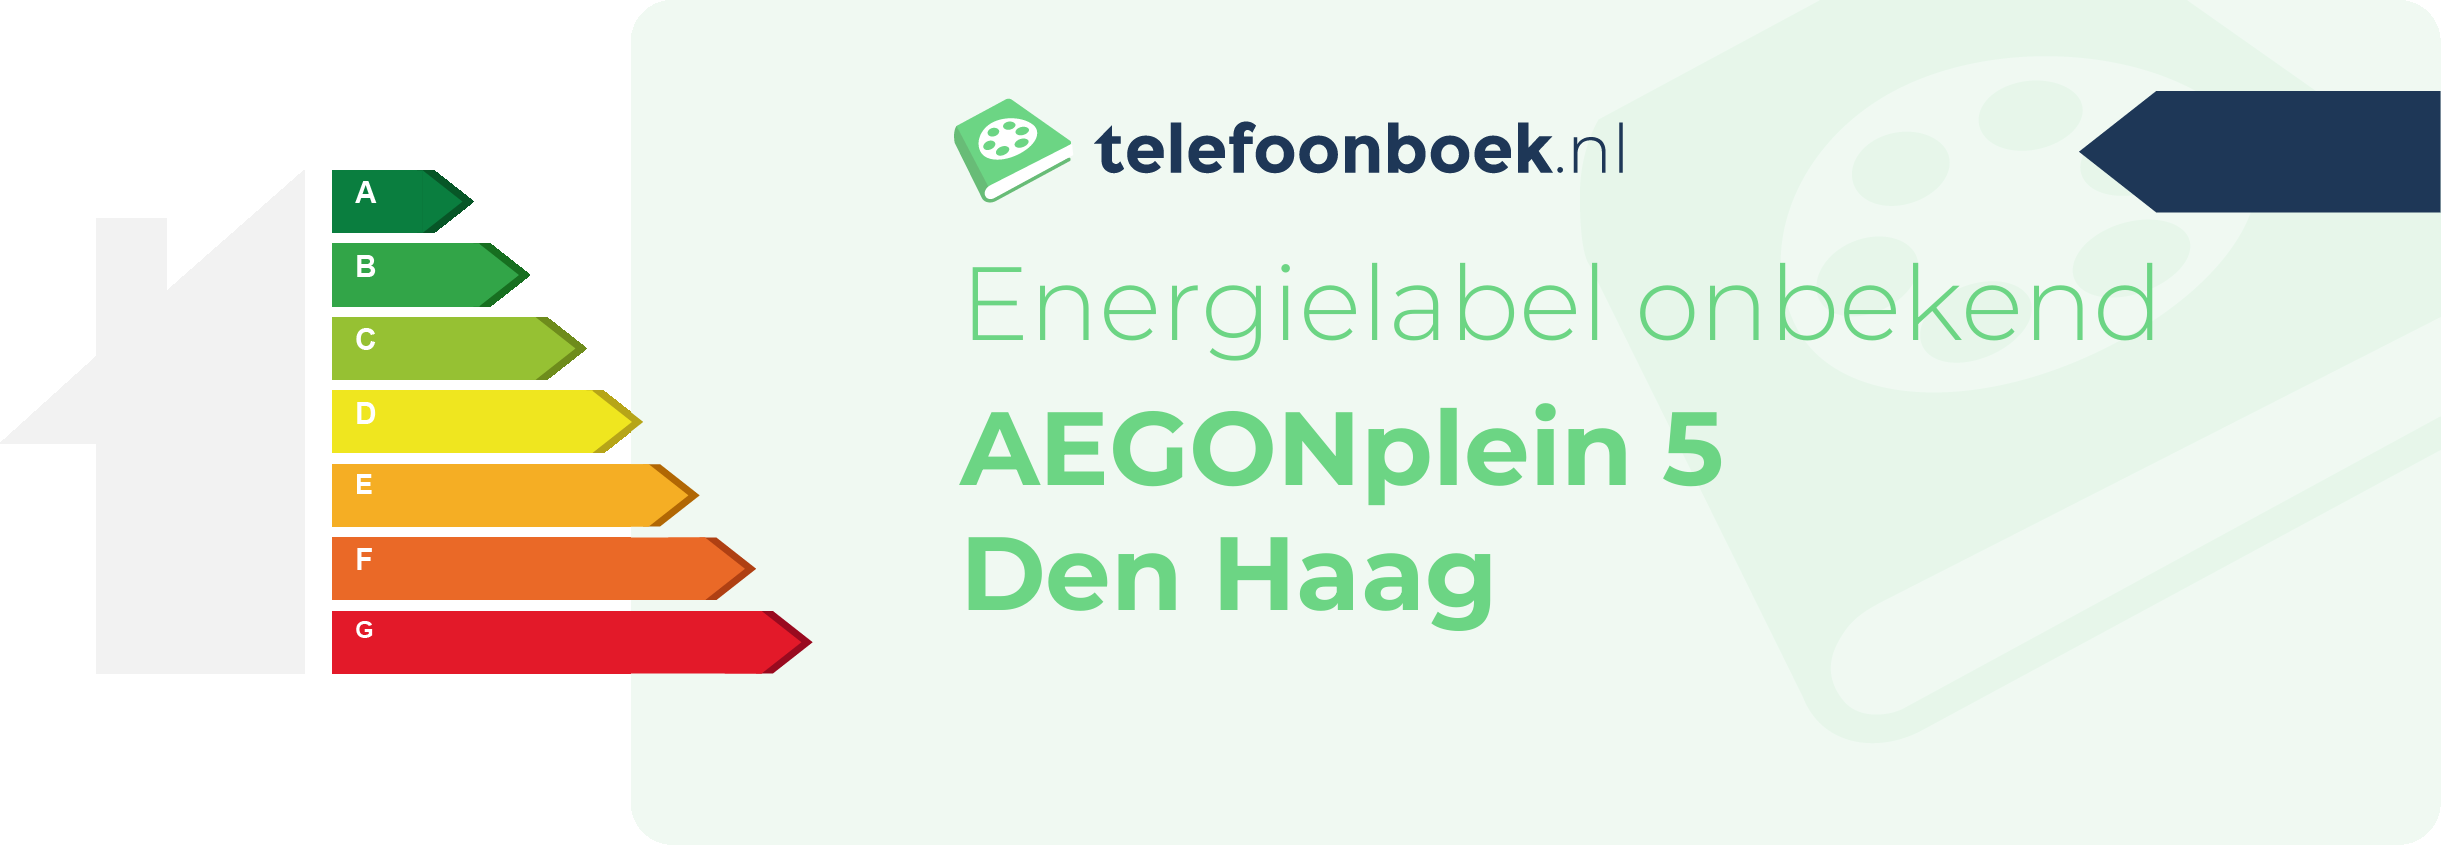 Energielabel AEGONplein 5 Den Haag